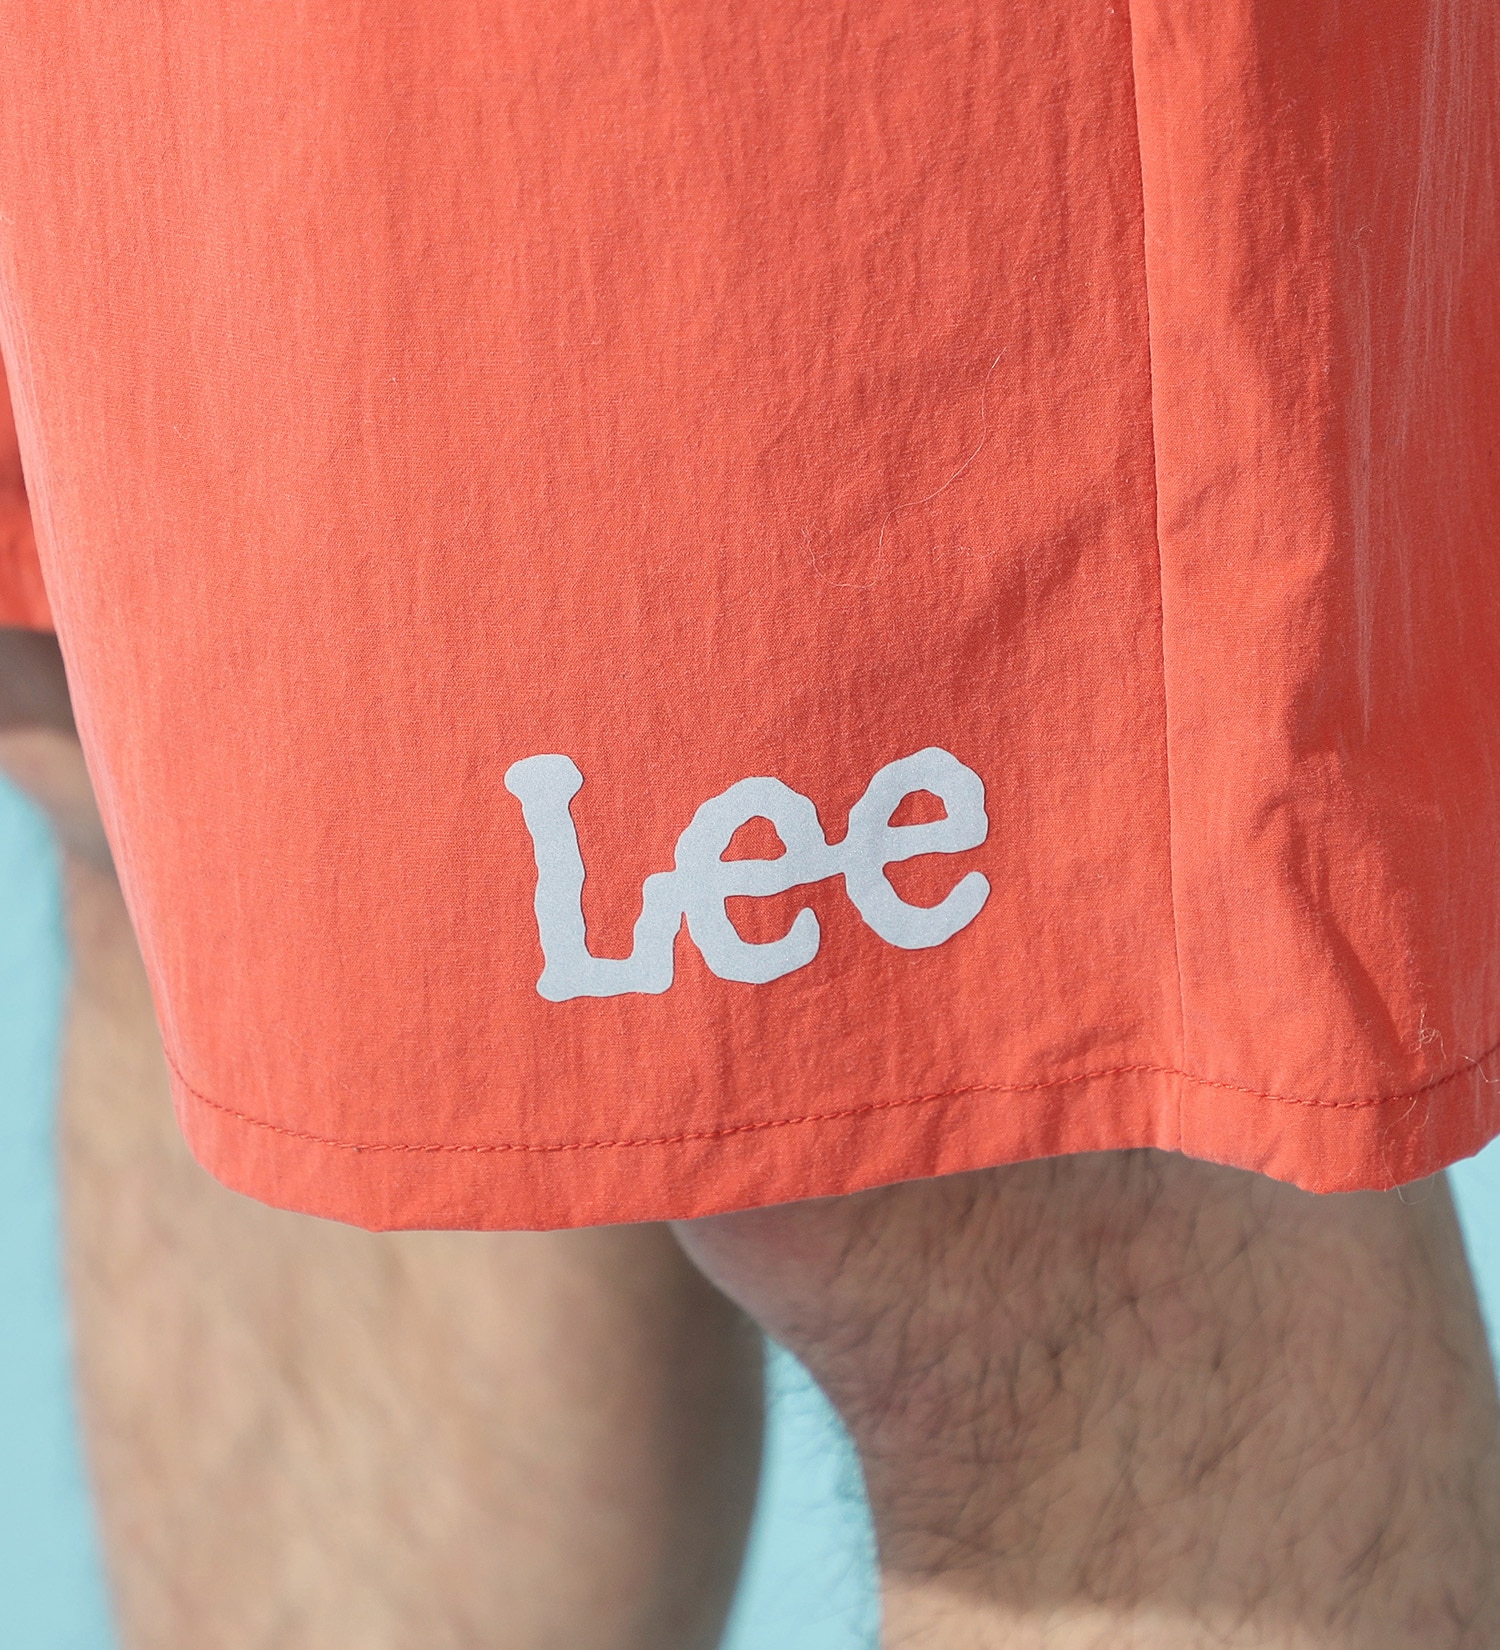 Lee(リー)の【試着対象】アスレチックショーツ|パンツ/パンツ/メンズ|オレンジ